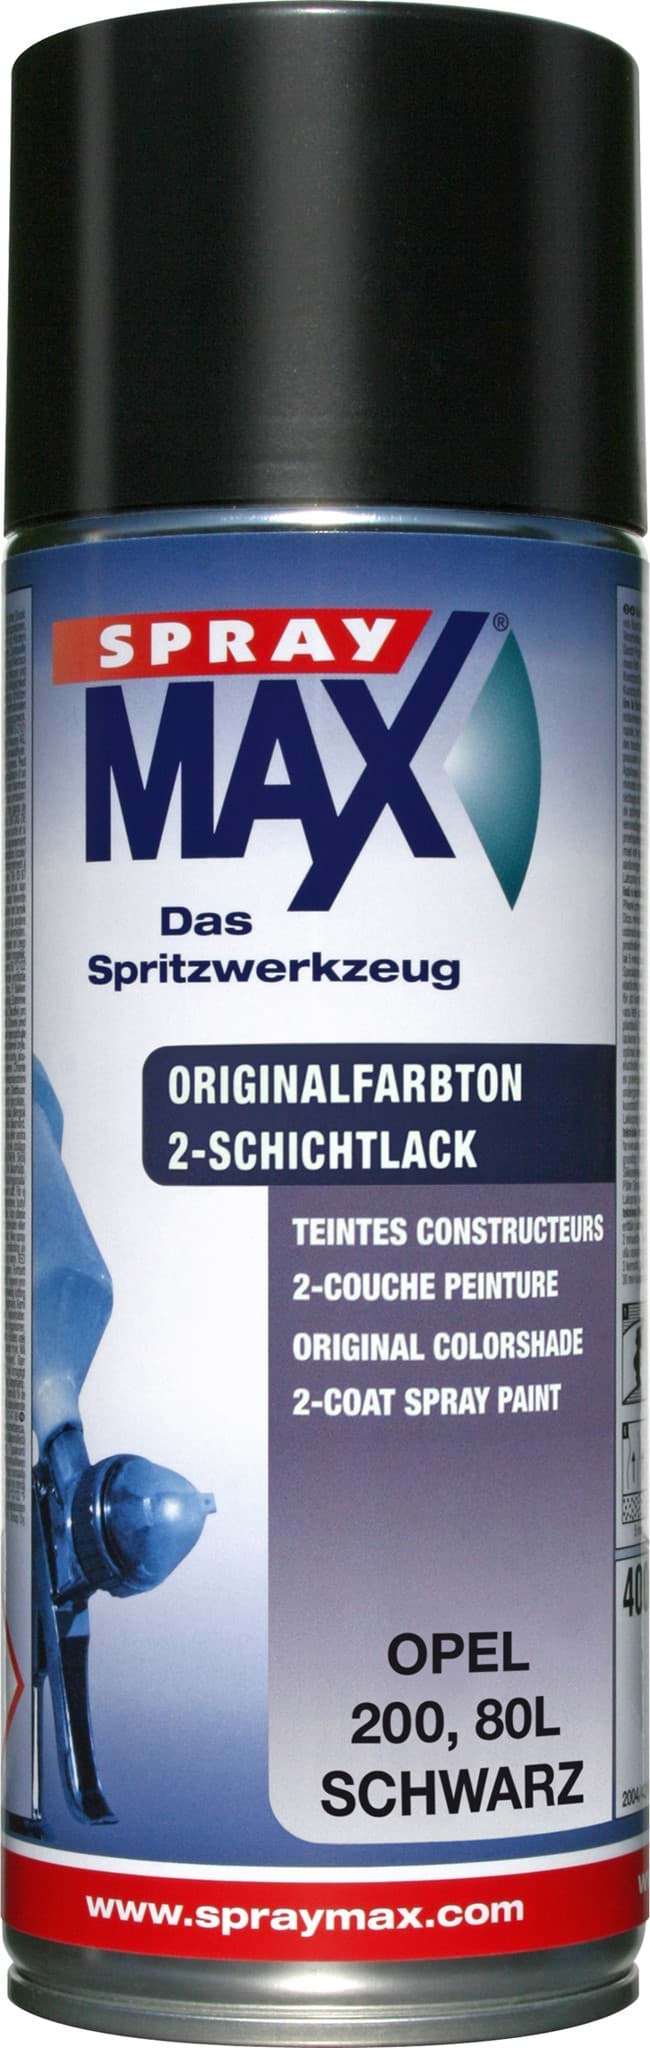 Изображение SprayMax Originalfarbton für Opel 200 schwarz